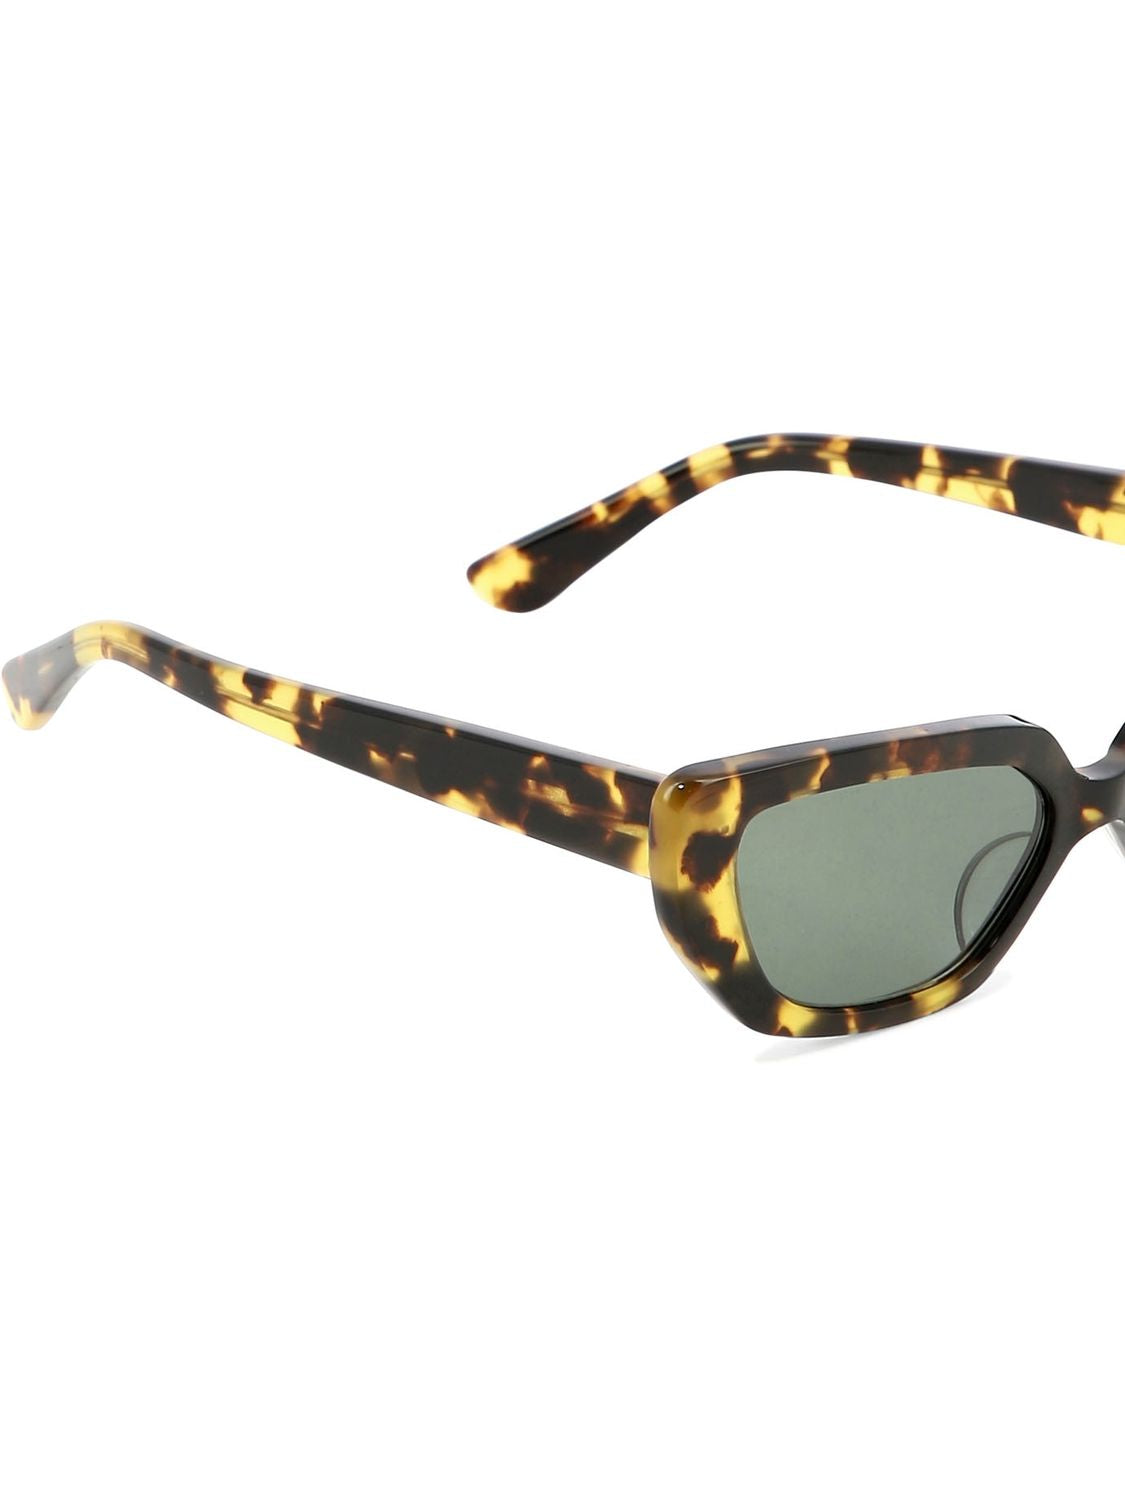 أنيق وجريء: نظارات شمس بنيّة اللون بتصميم العين القطّية للرجال